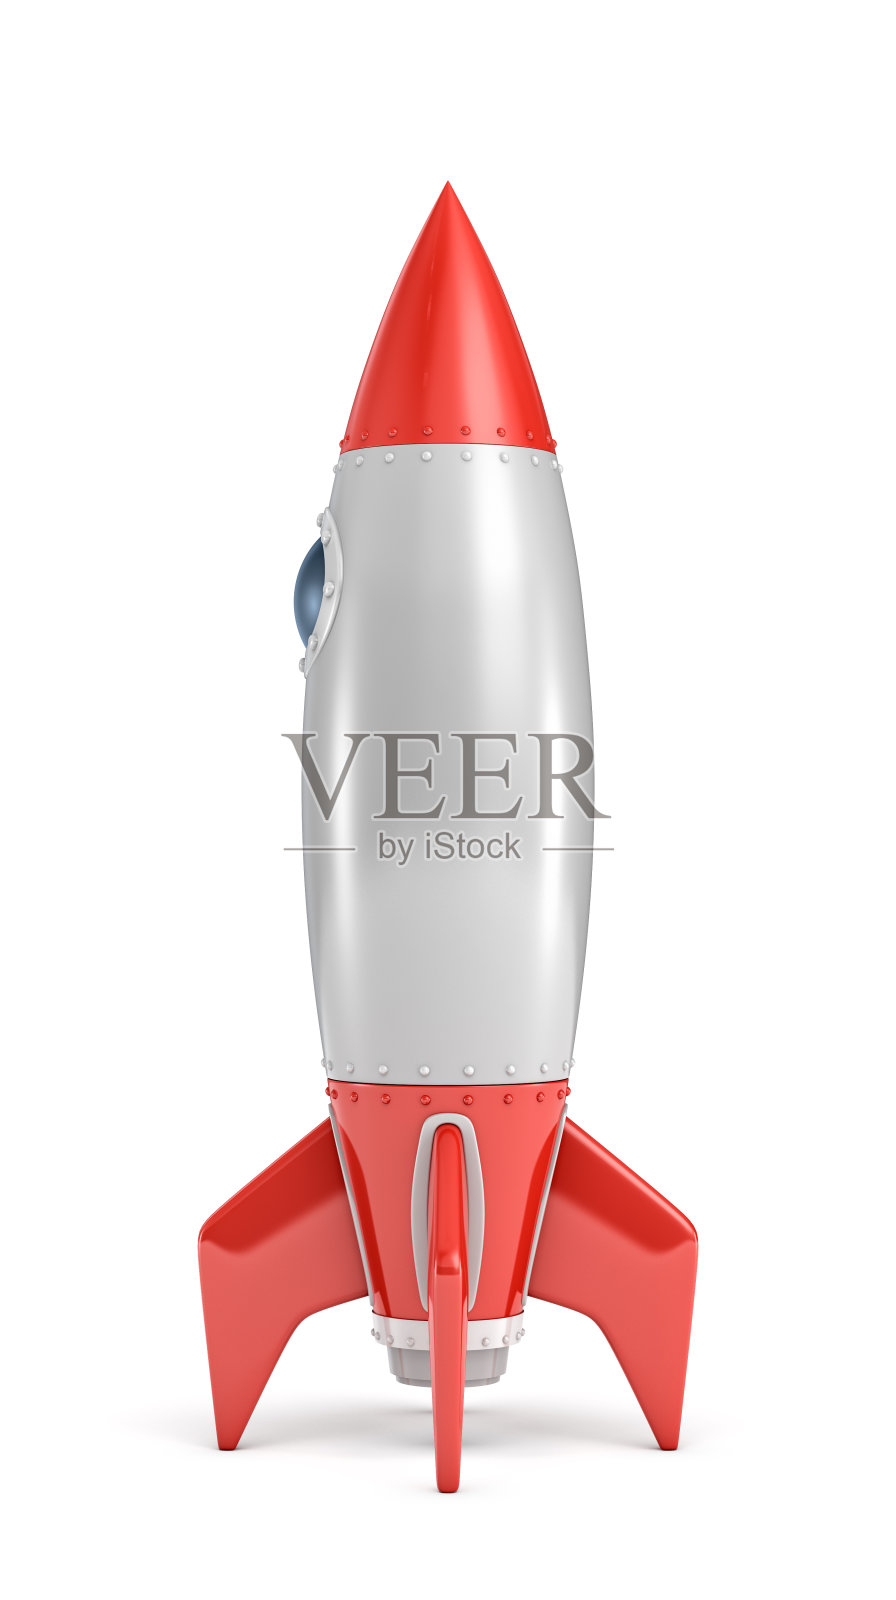 一个银色和红色的火箭船的3d渲染与一个圆形的舷窗站在一个白色的背景。设计元素图片